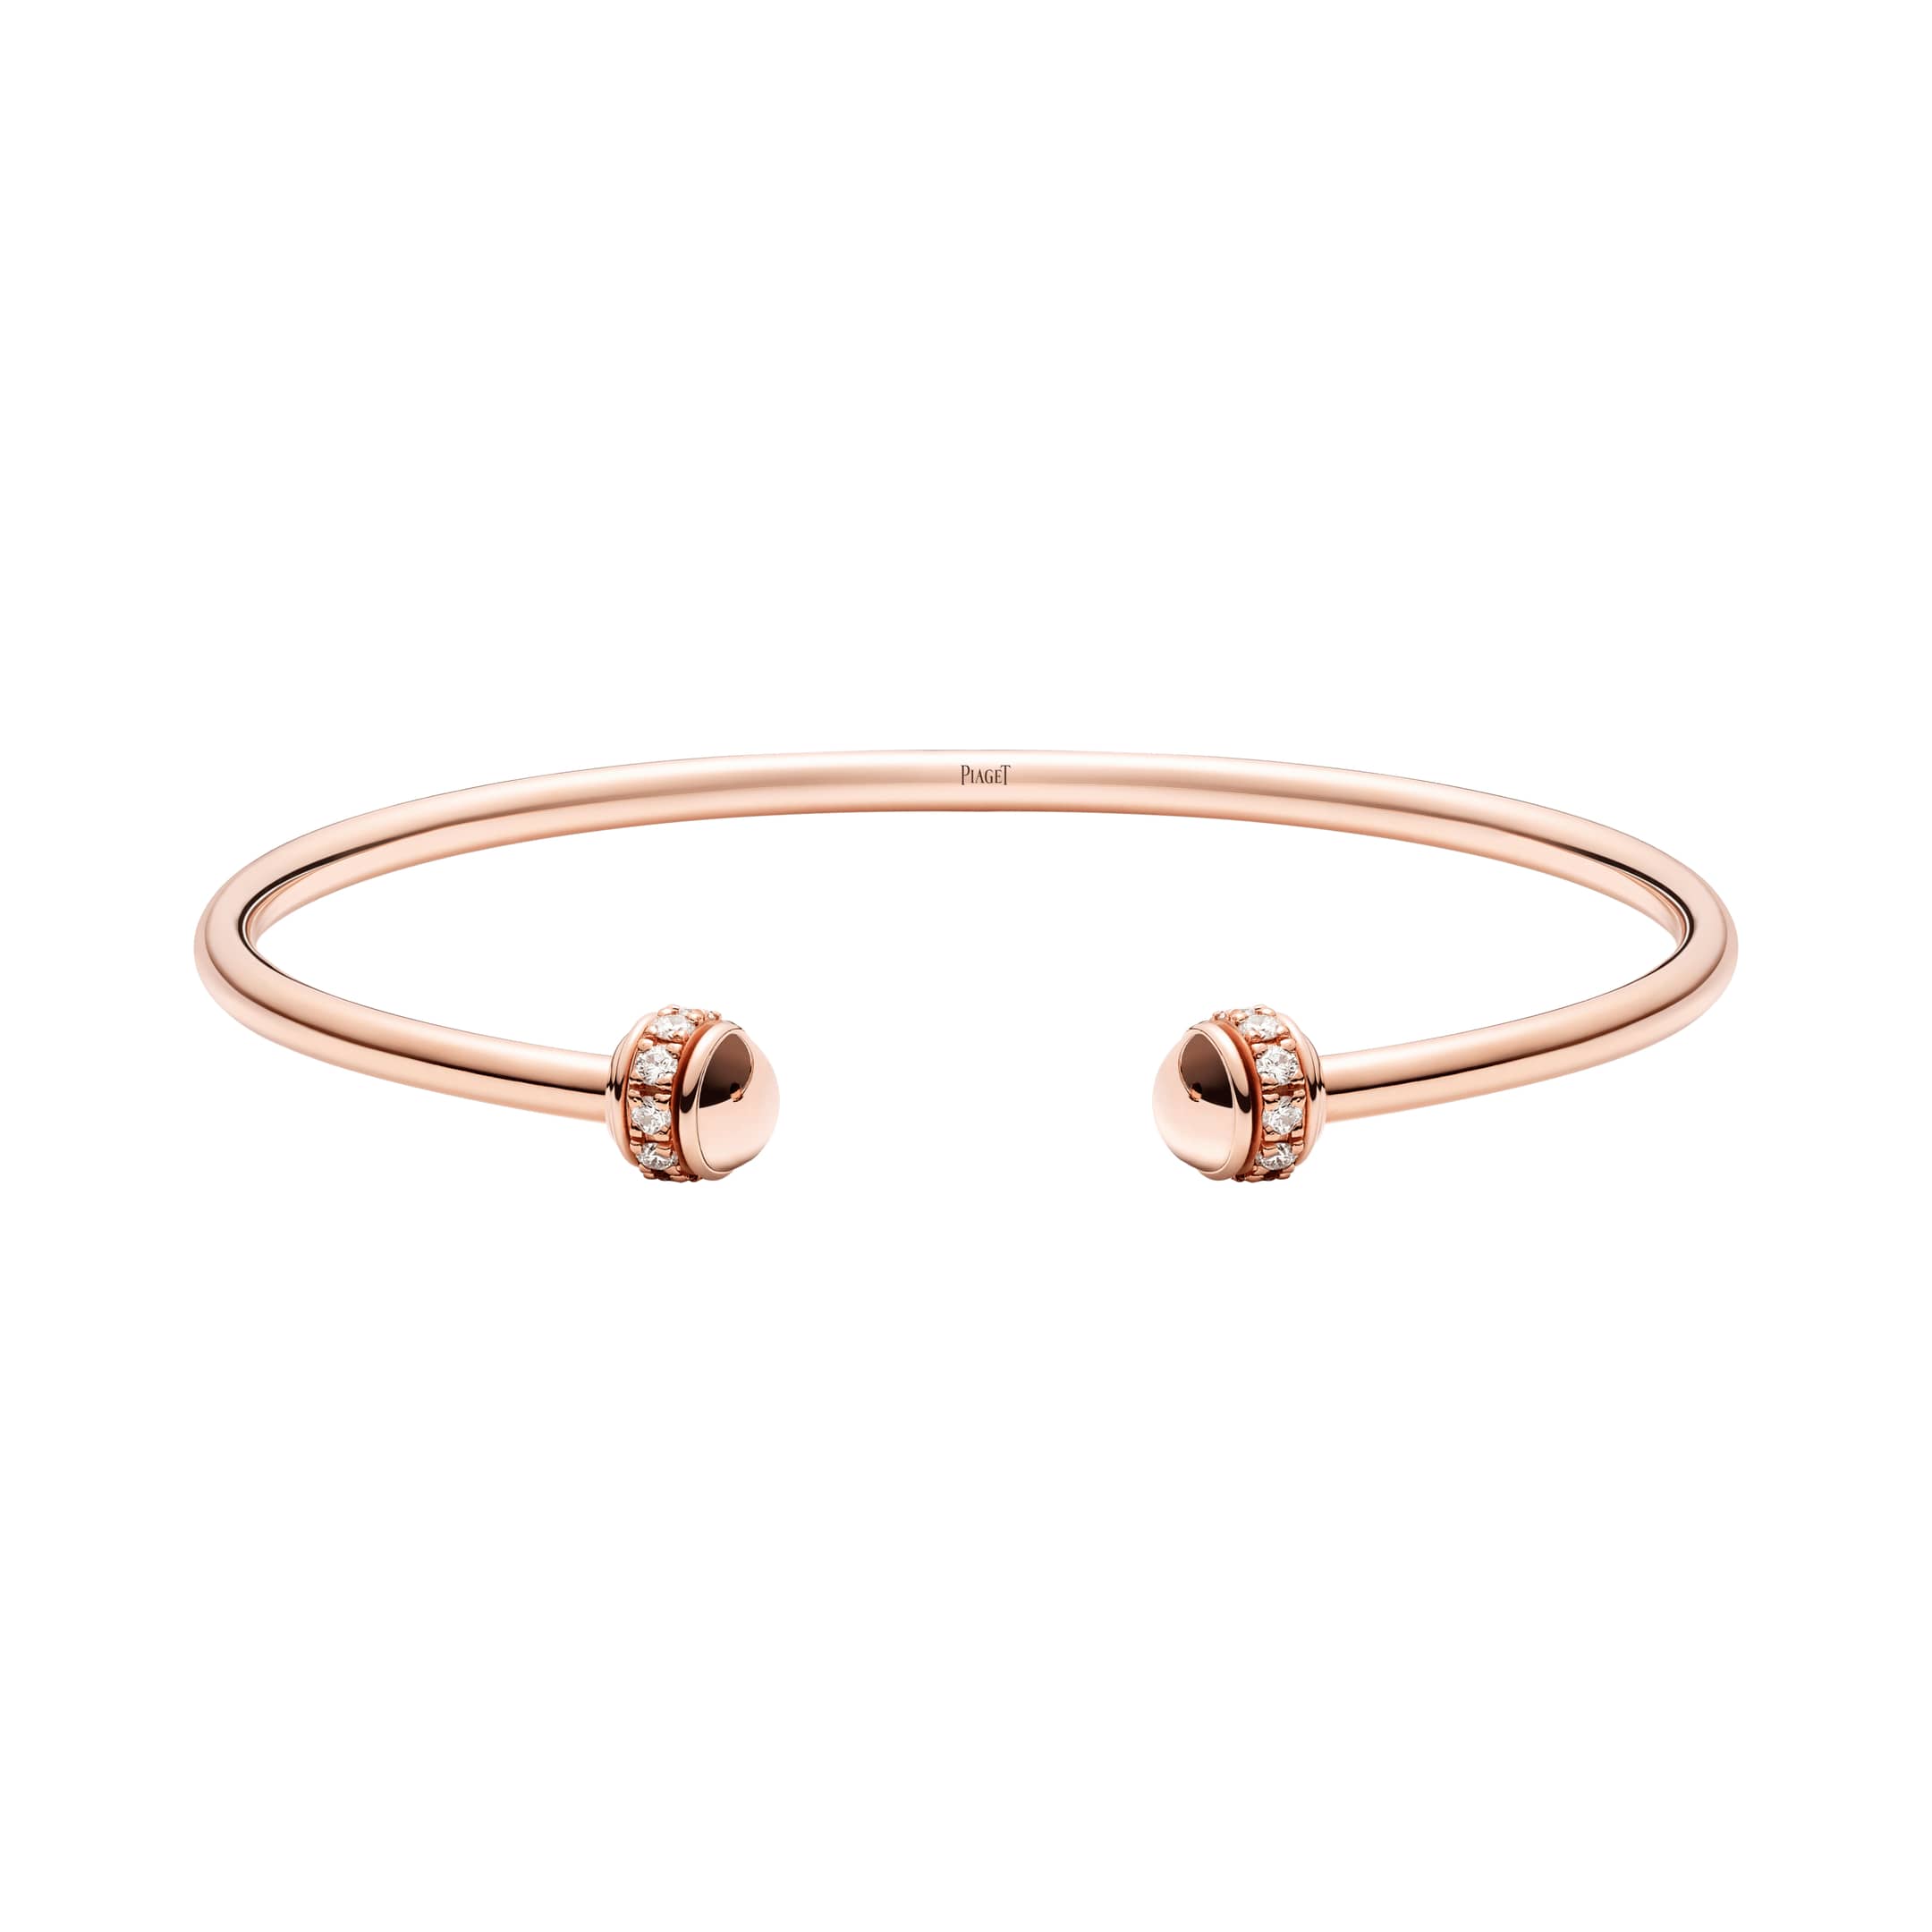 Share 92+ 18k rose gold bracelet - POPPY